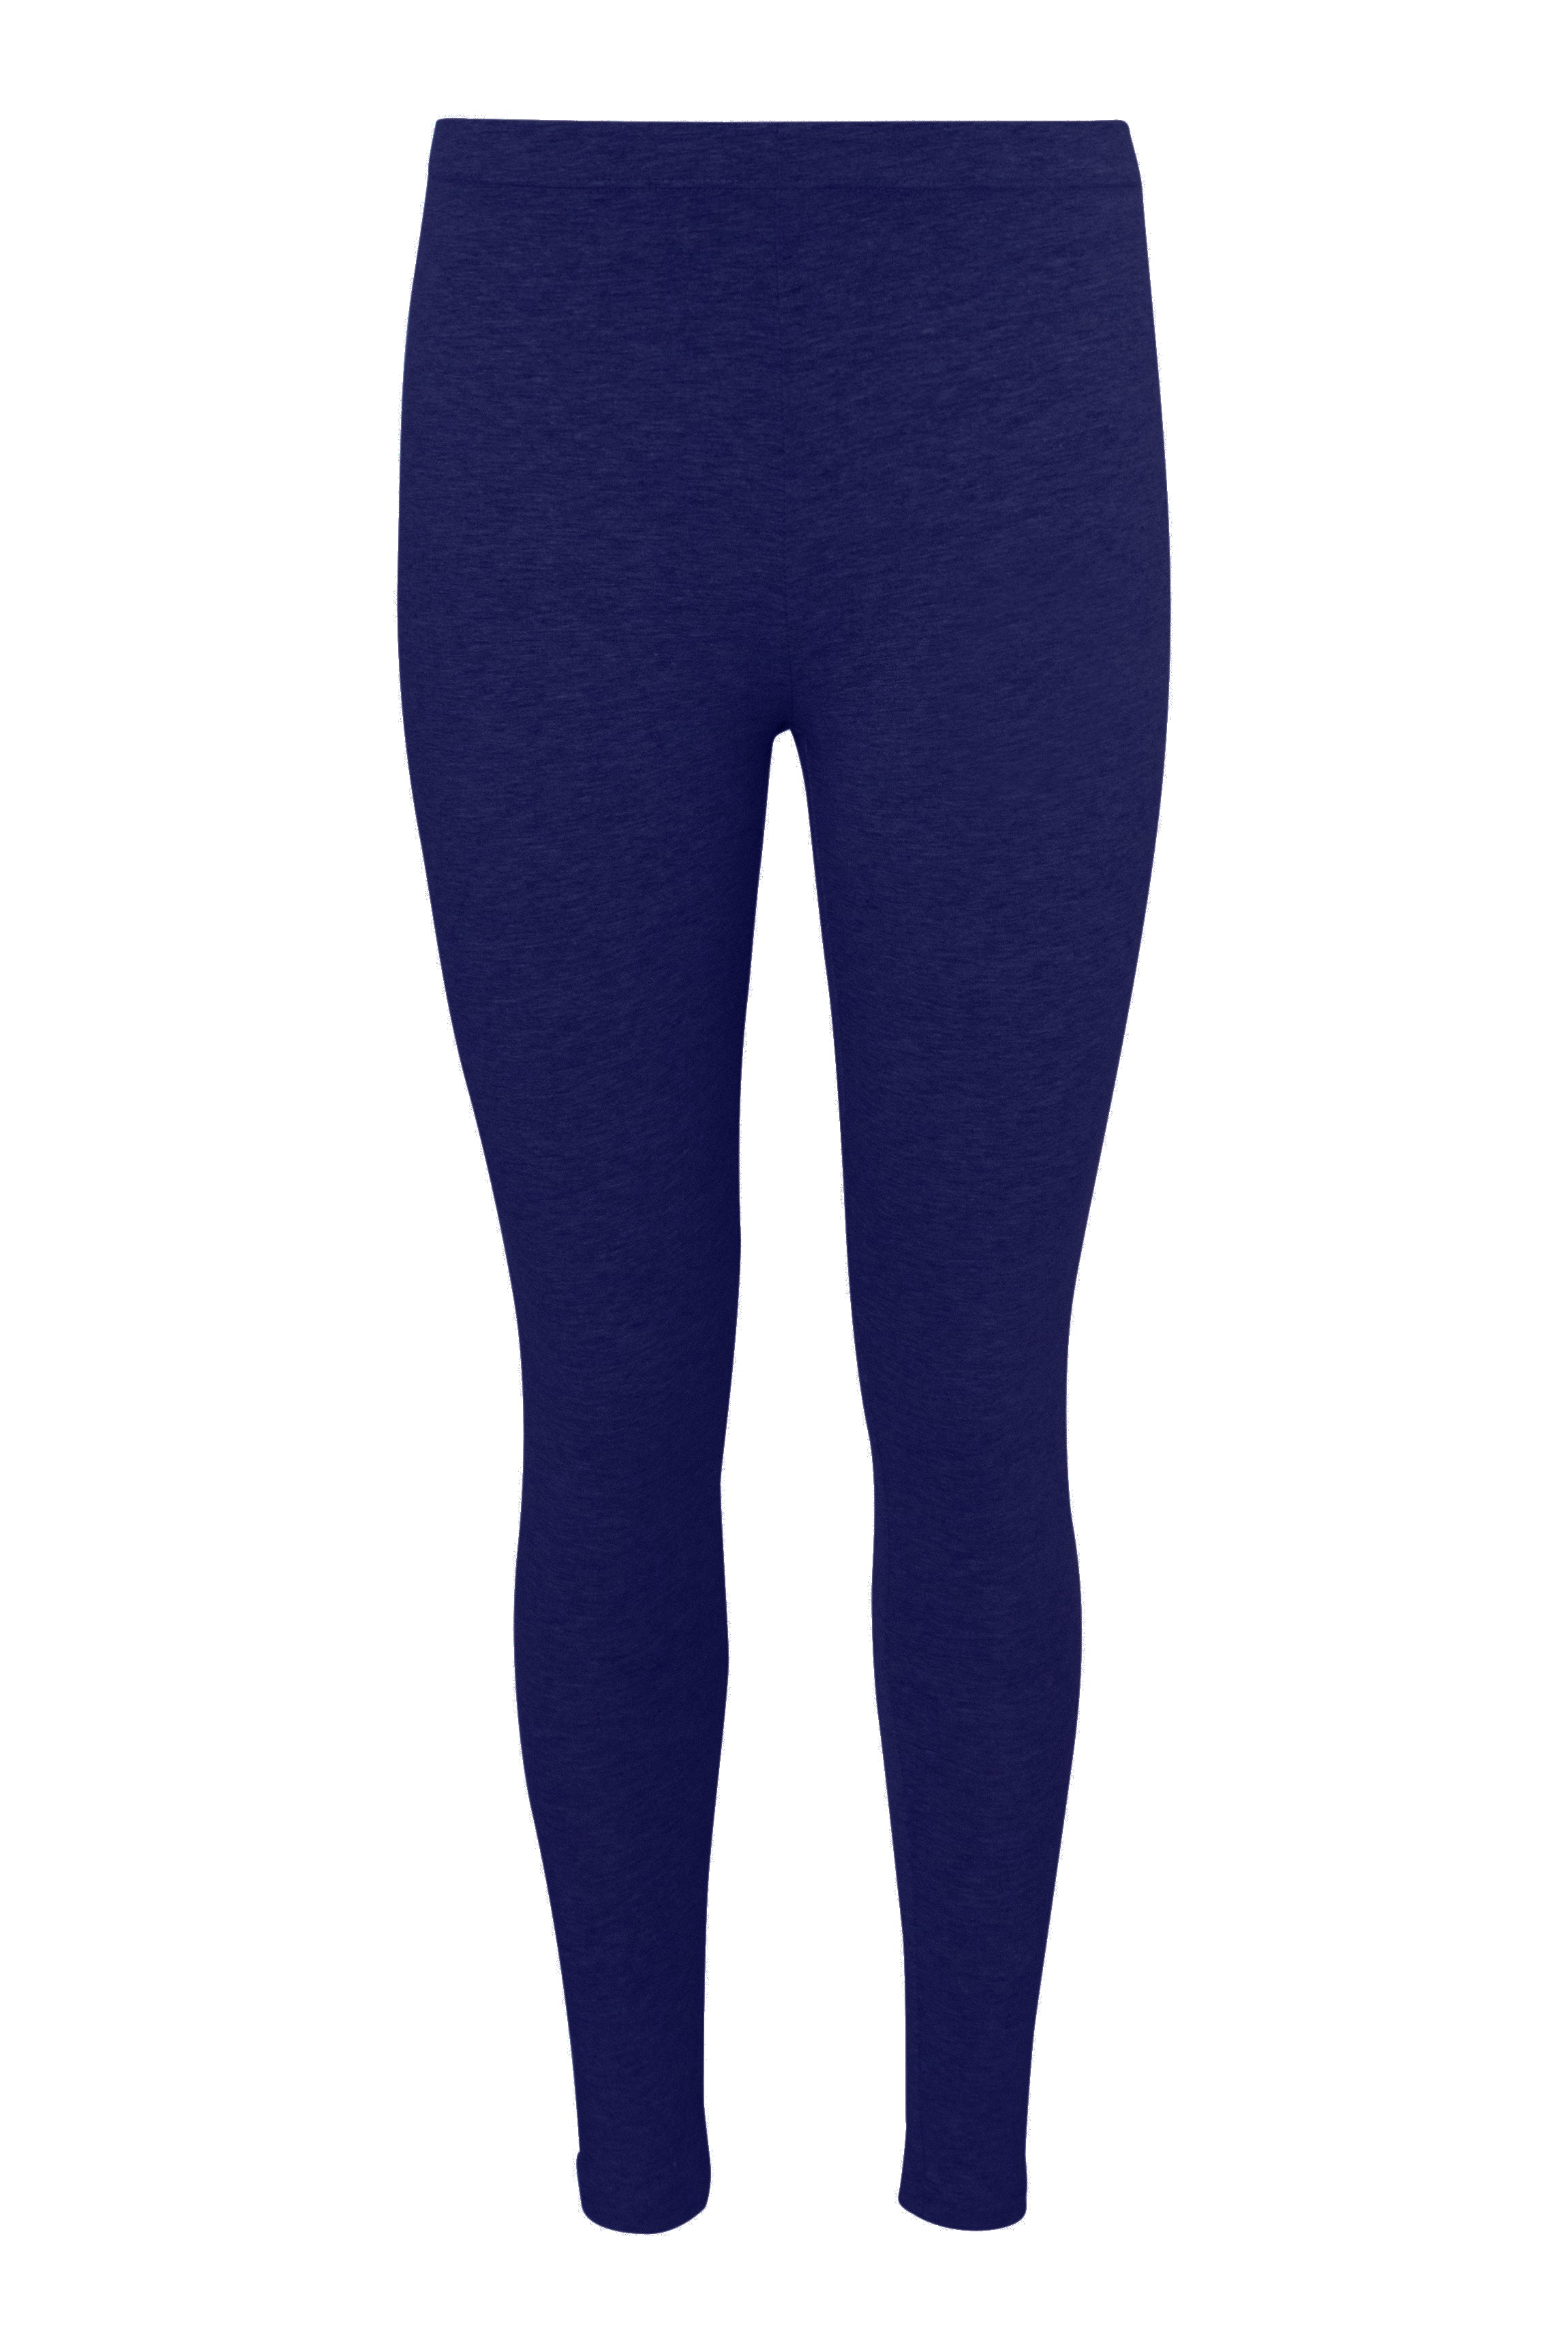 Power Comfort Everyday Leggings - Navy Blue – Rosaleen Activewear